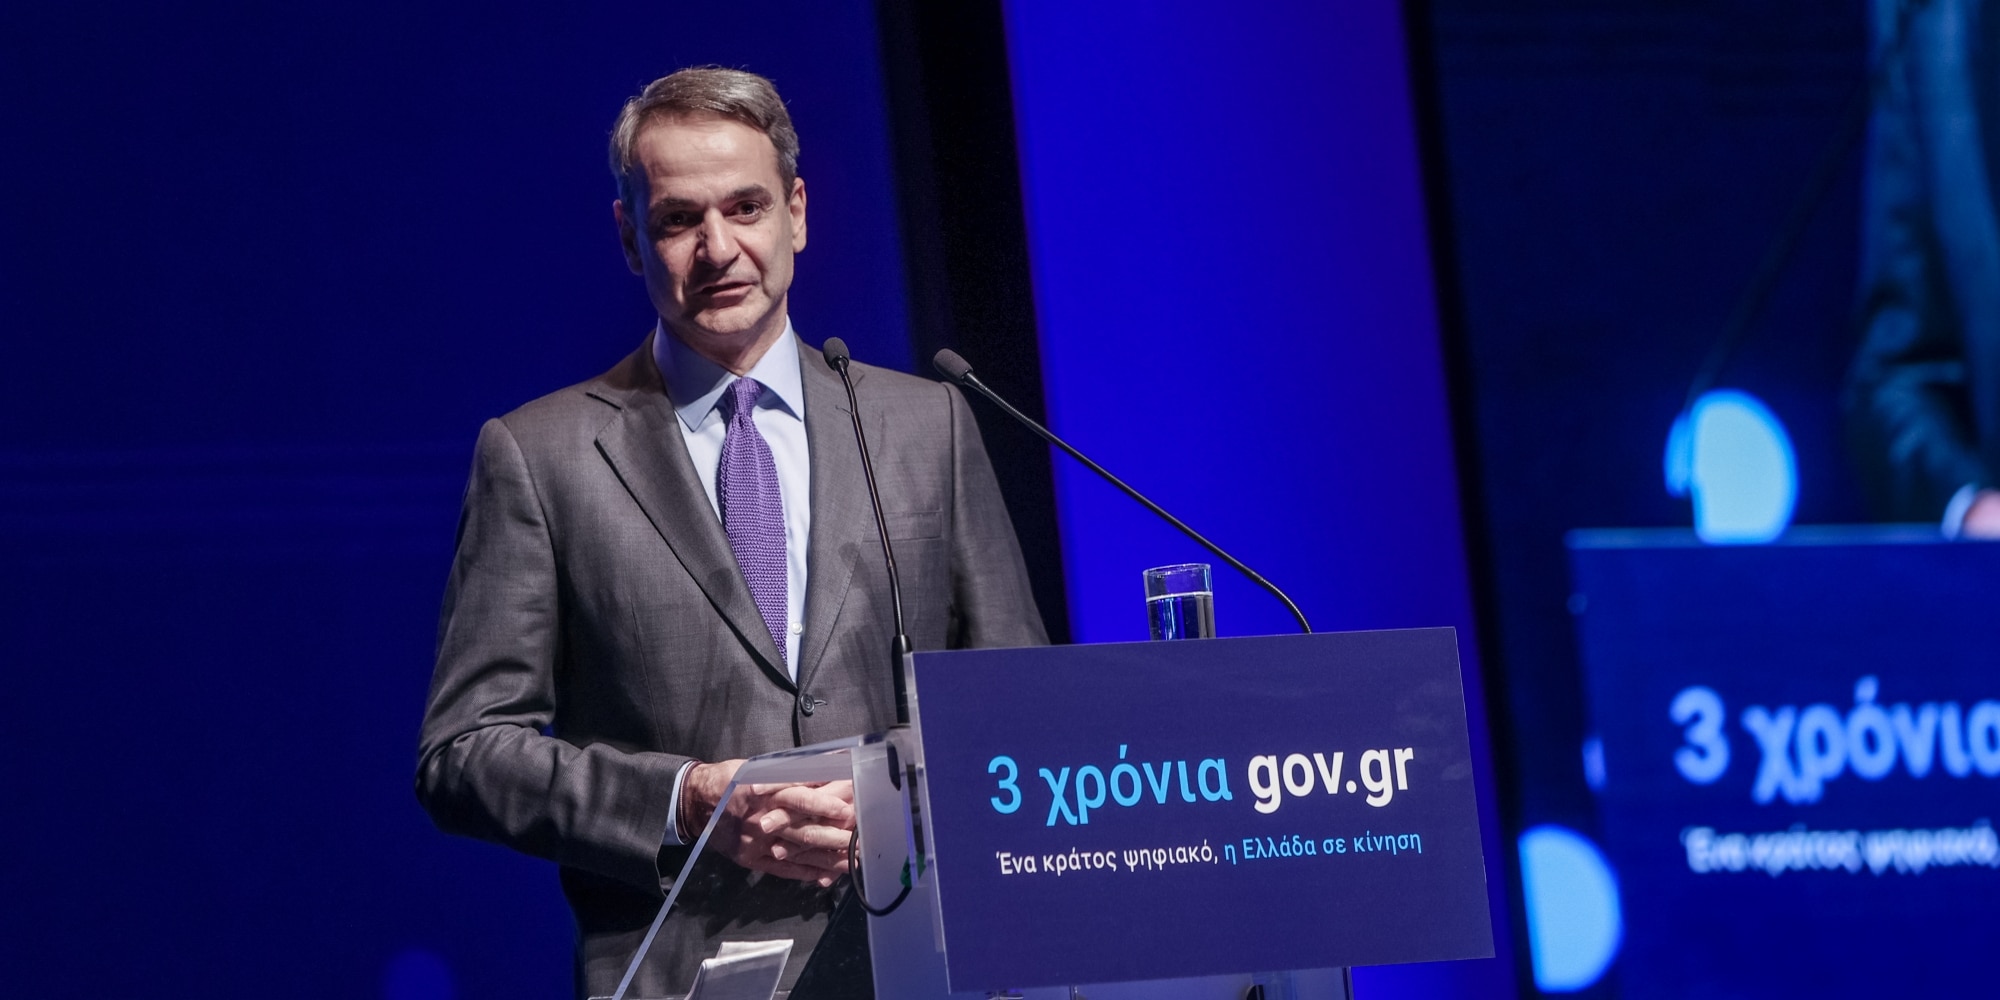 Ο Κυριάκος Μητσοτάκης για τα 3 χρόνια gov.gr